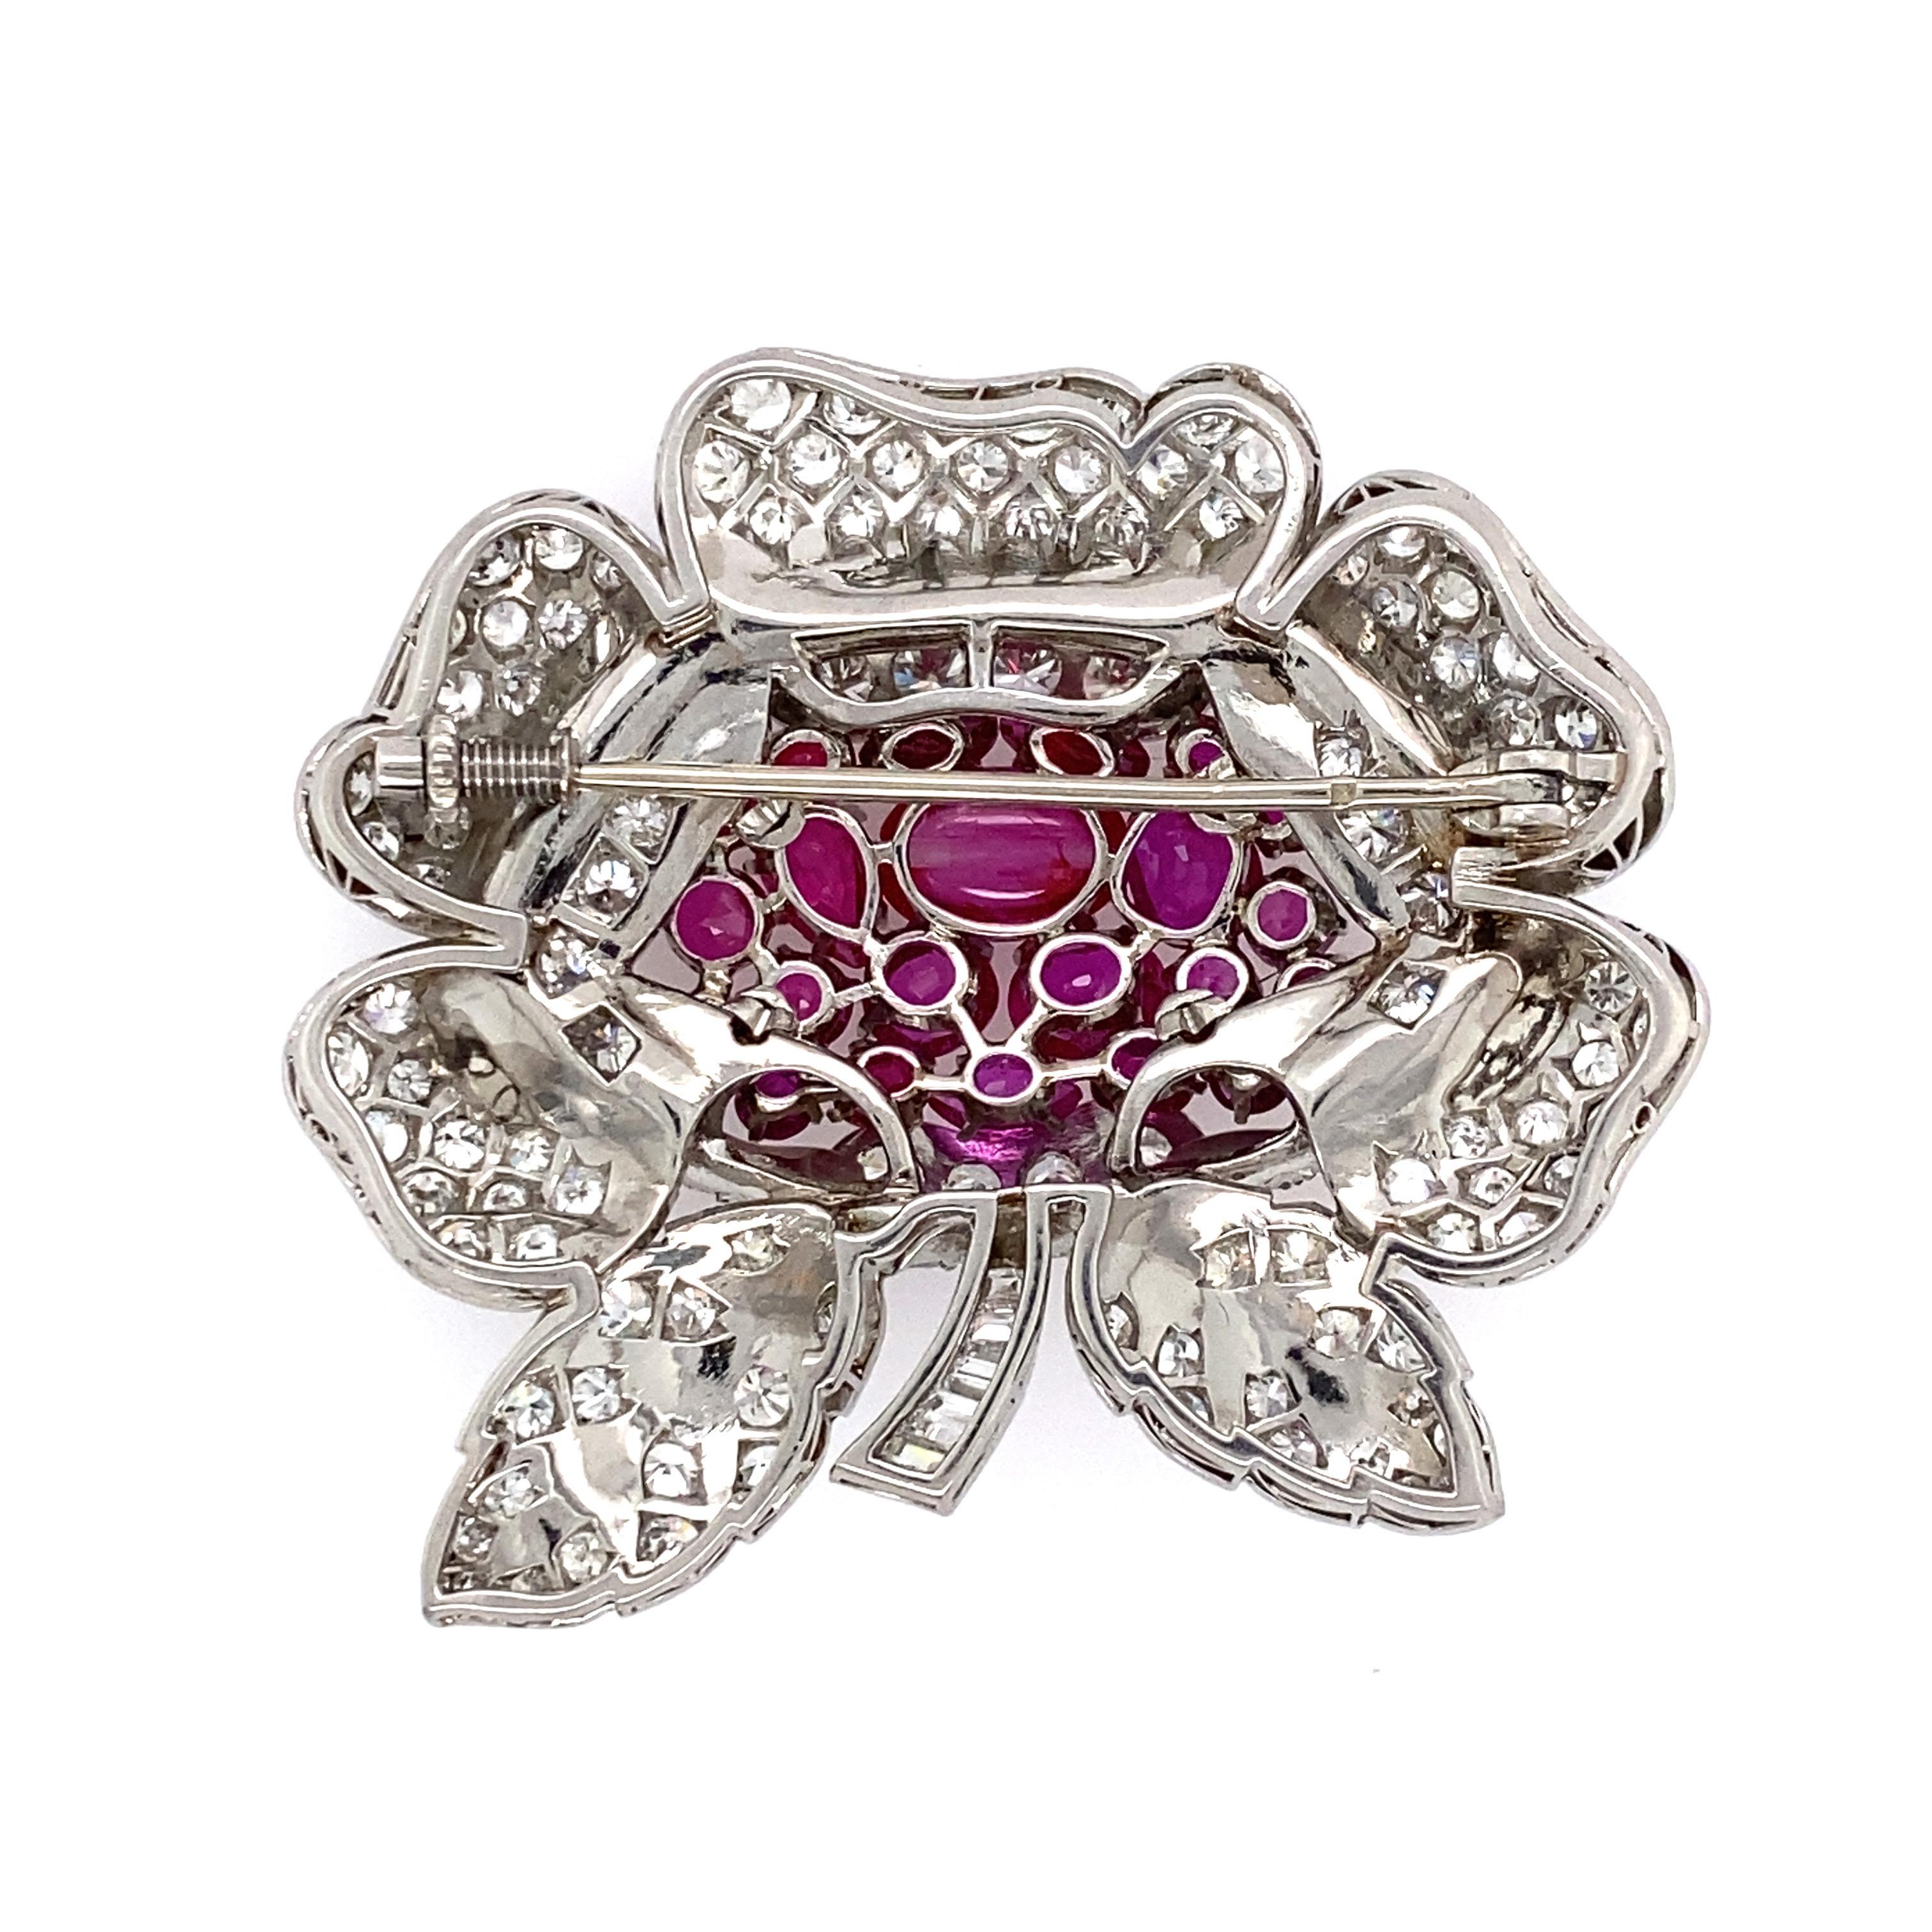 Fabulous Französisch Art Deco Platin birmanischen Rubin und Diamant montiert floralen Form Pin. 22 farblich passende birmanische Rubine. Der größte Cabochon-Rubin misst ca. 8,5 x 5,6 mm. Zentrum Rubin gechipt. Der größte Ovalschliff misst ca. 5,4 x